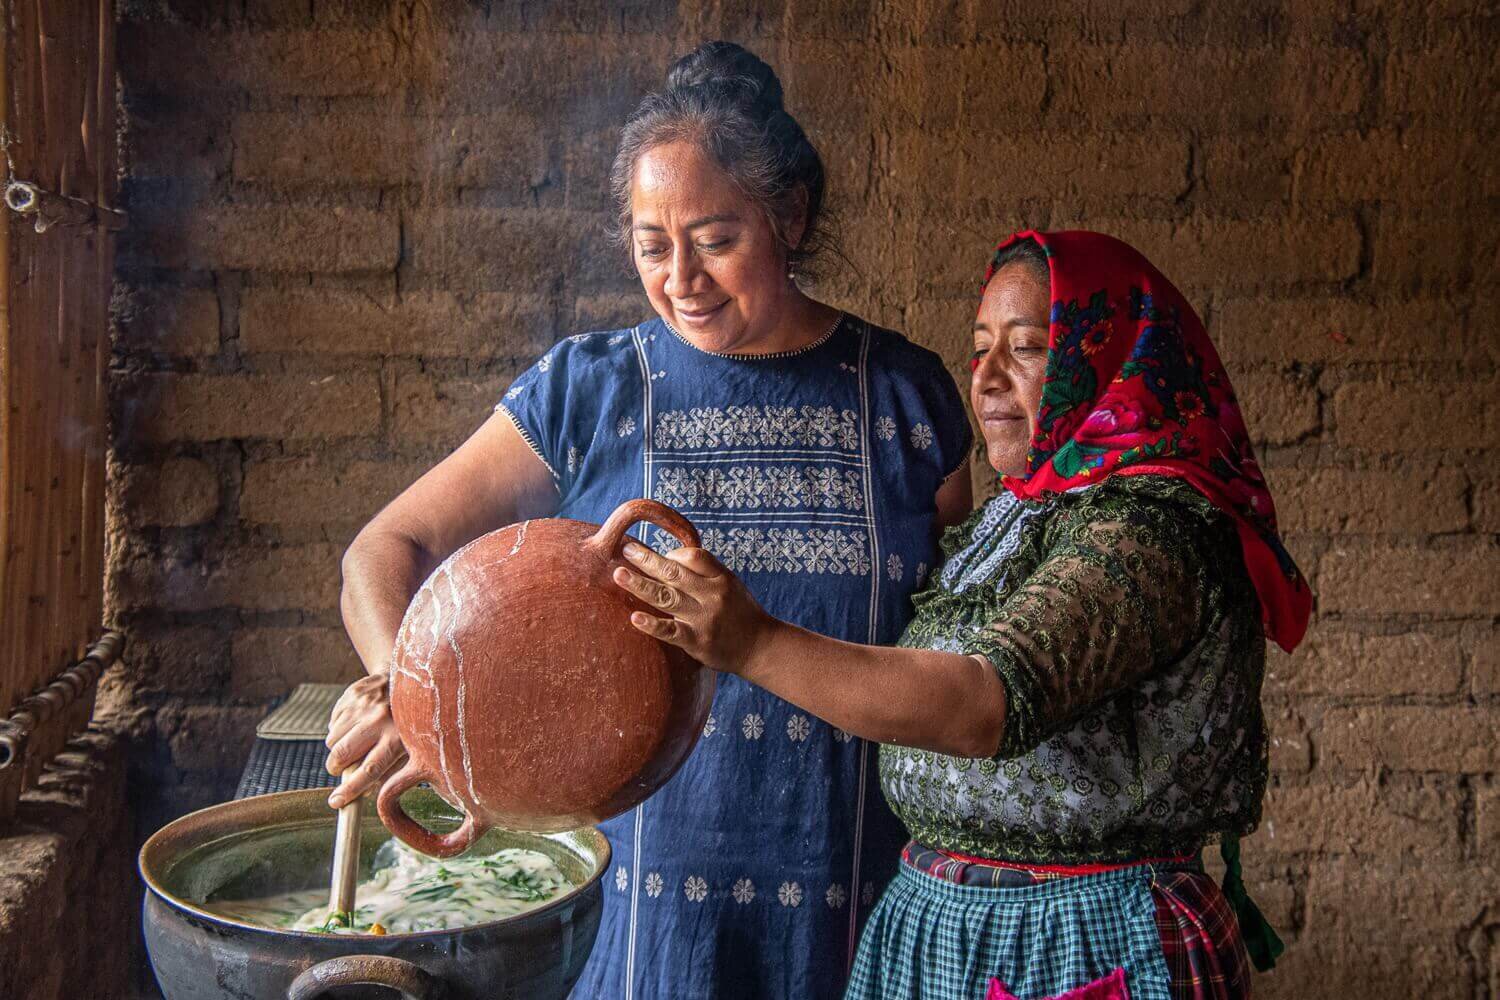 Carina Santiago comparte la cocina tradicional de Oaxaca en el taller Tierra Antigua. Tradiciones de Oaxaca. Valles Centrales de Oaxaca.